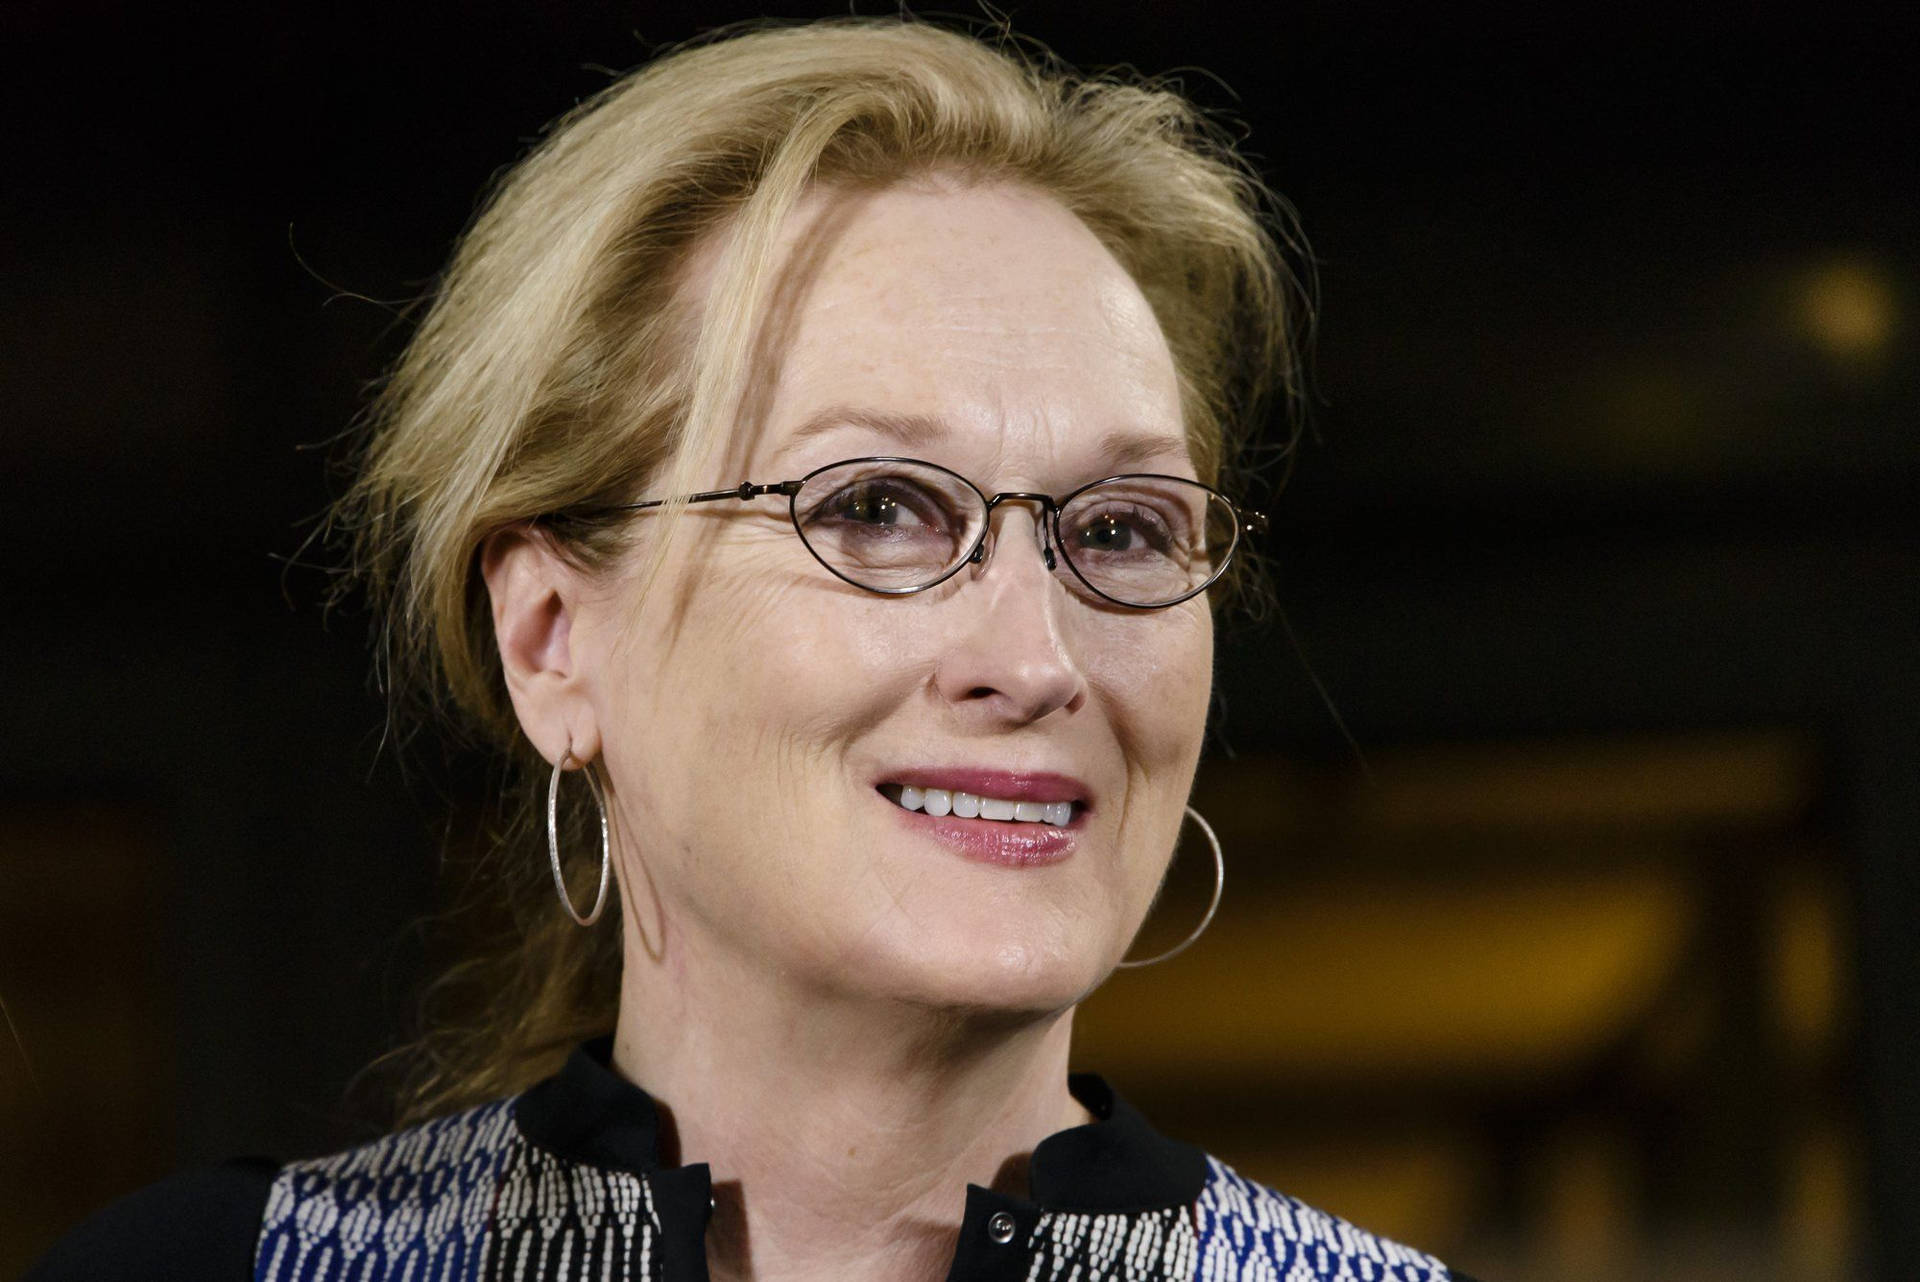 Messy Hair Look Of Meryl Streep